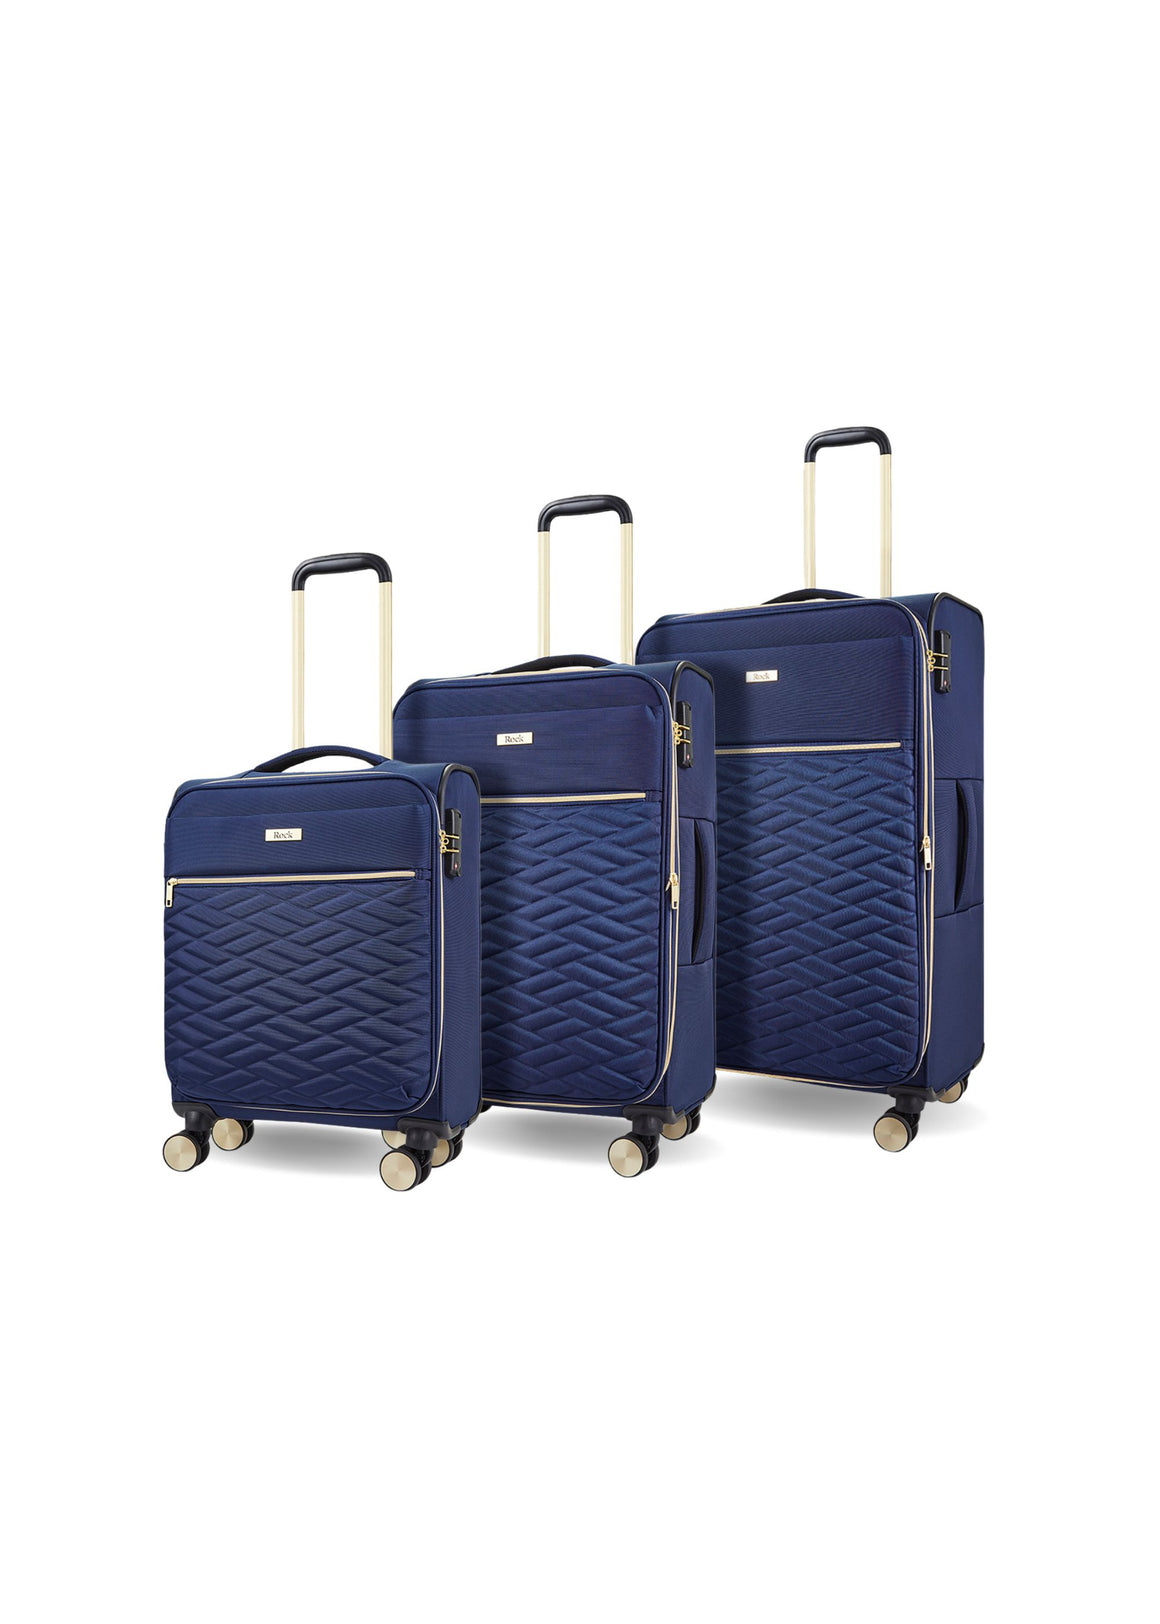 Santiago Set of 3 Suitcases in Navy